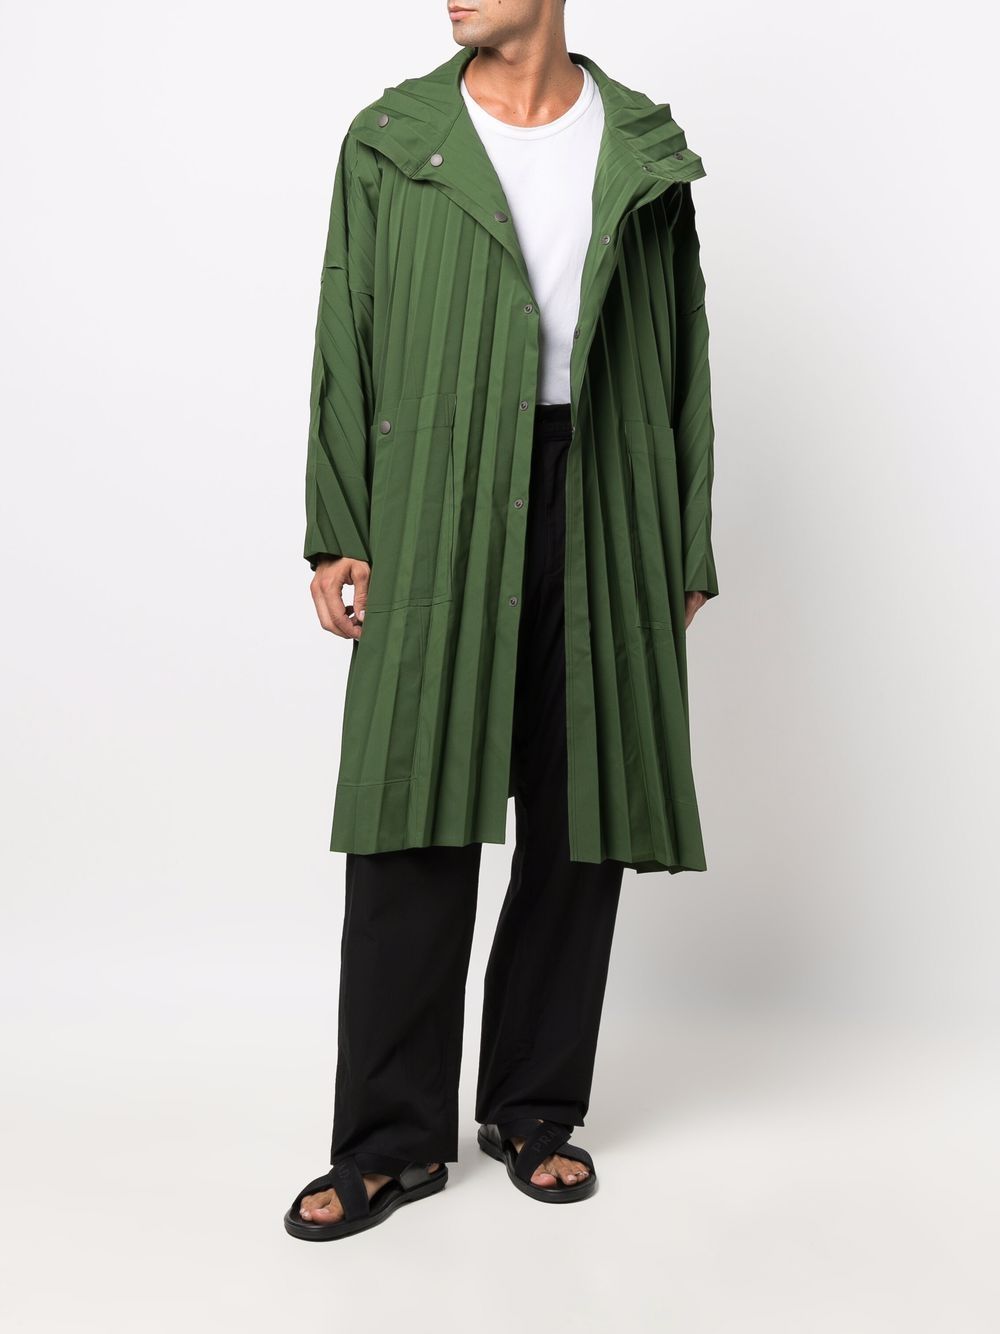 фото Homme plissé issey miyake пальто с плиссировкой